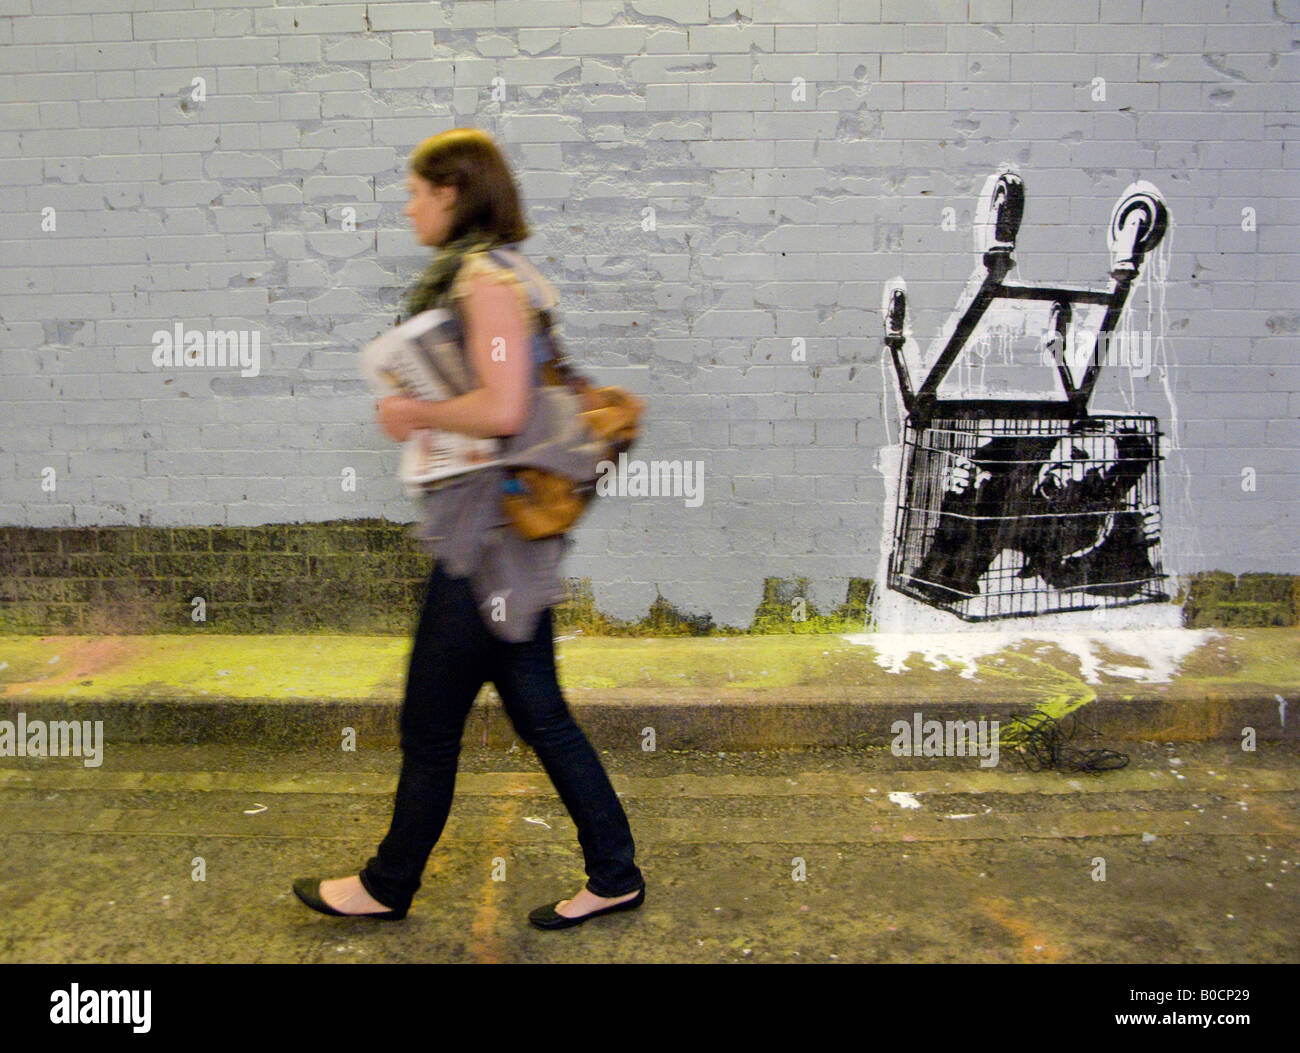 Weibliche Verbraucher unter Einkaufswagen gefangen - ein Bild von The Cans  Festival, London Straße Ausstellung Banksy geholfen offen Stockfotografie -  Alamy